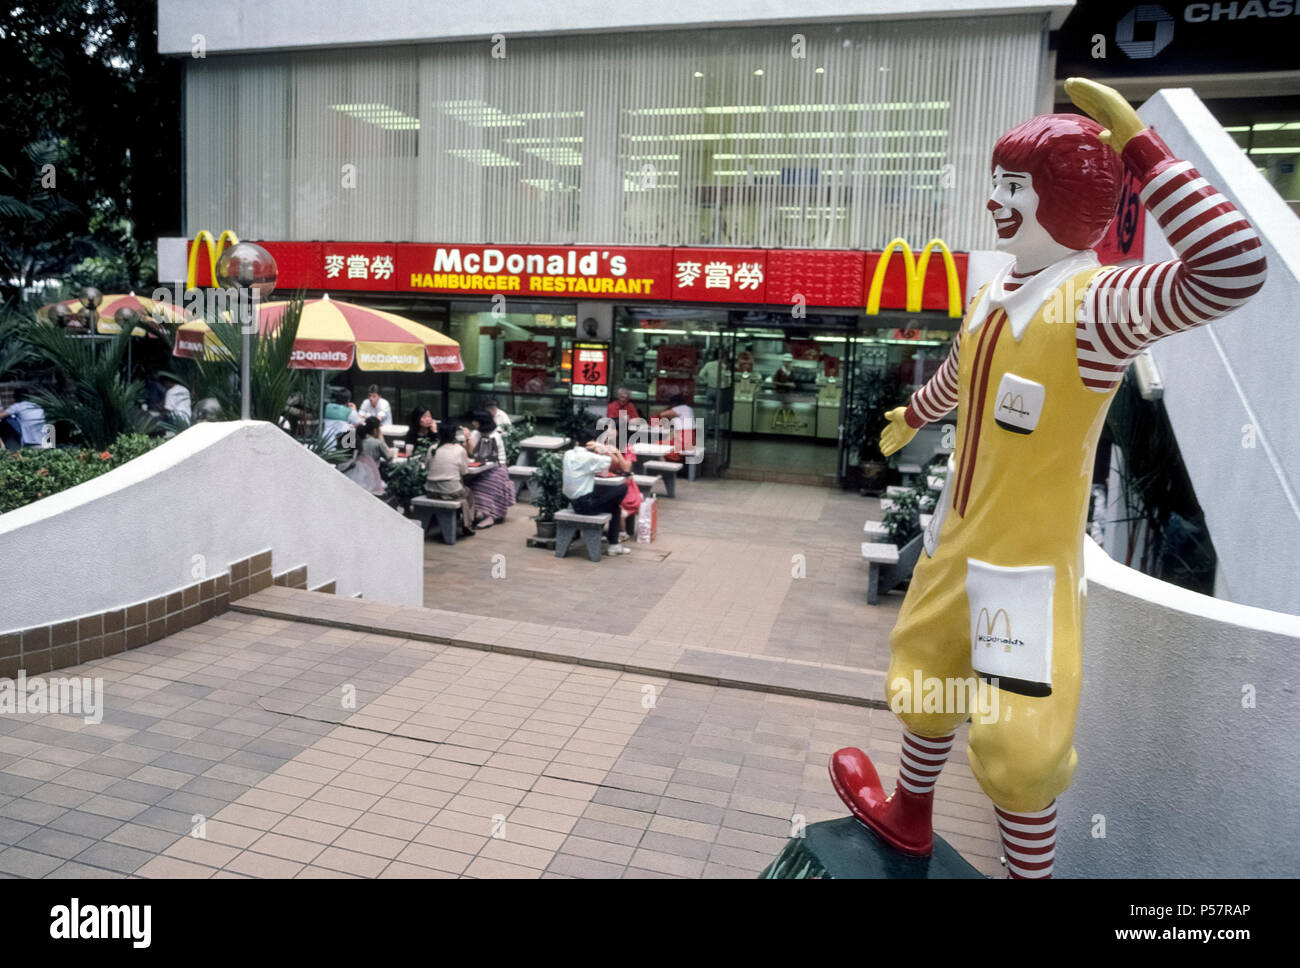 Ronald McDonald, die ikonische rothaarigen Clown, dass ist der berühmte Werbung Symbol für einen weltweiten Fast-Food-Kette, begrüßt die hungernden Völker zu einem McDonald's Restaurant in Singapur in Südostasien. Es ist eines von sieben Standorten der Hamburger Kette entlang der eleganten Einkaufsstraße Orchard Road. Ronald wurde als Maskottchen der amerikanischen Firma im Jahr 1963 eingeführt und Jetzt lächelt Diners, die an mehr als 35.000 McDonald's Restaurants in über 100 Ländern. Stockfoto